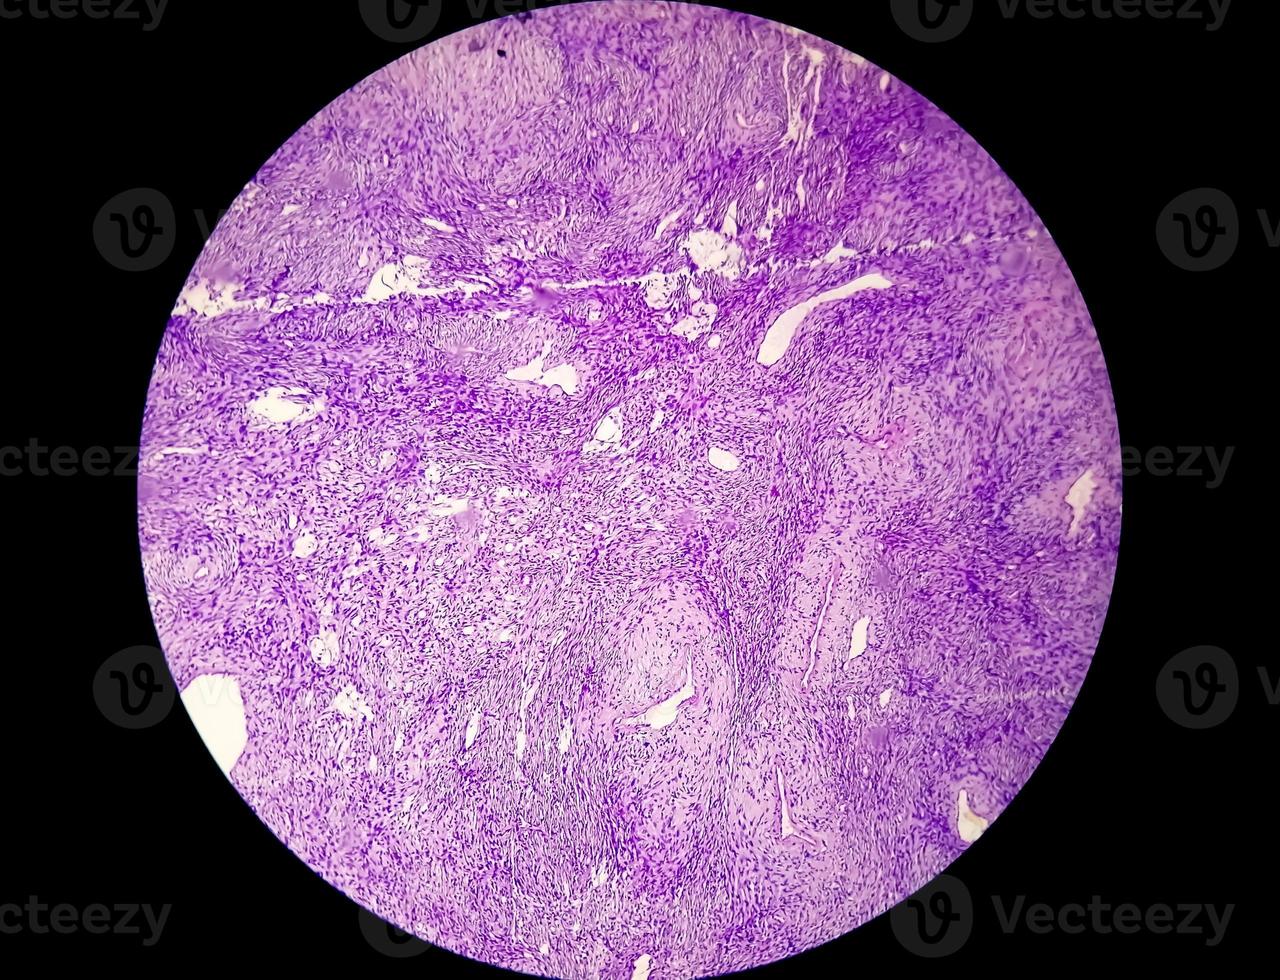 microfotografia o immagine al microscopio del cancro allo stomaco. adenocarcinoma dello stomaco foto